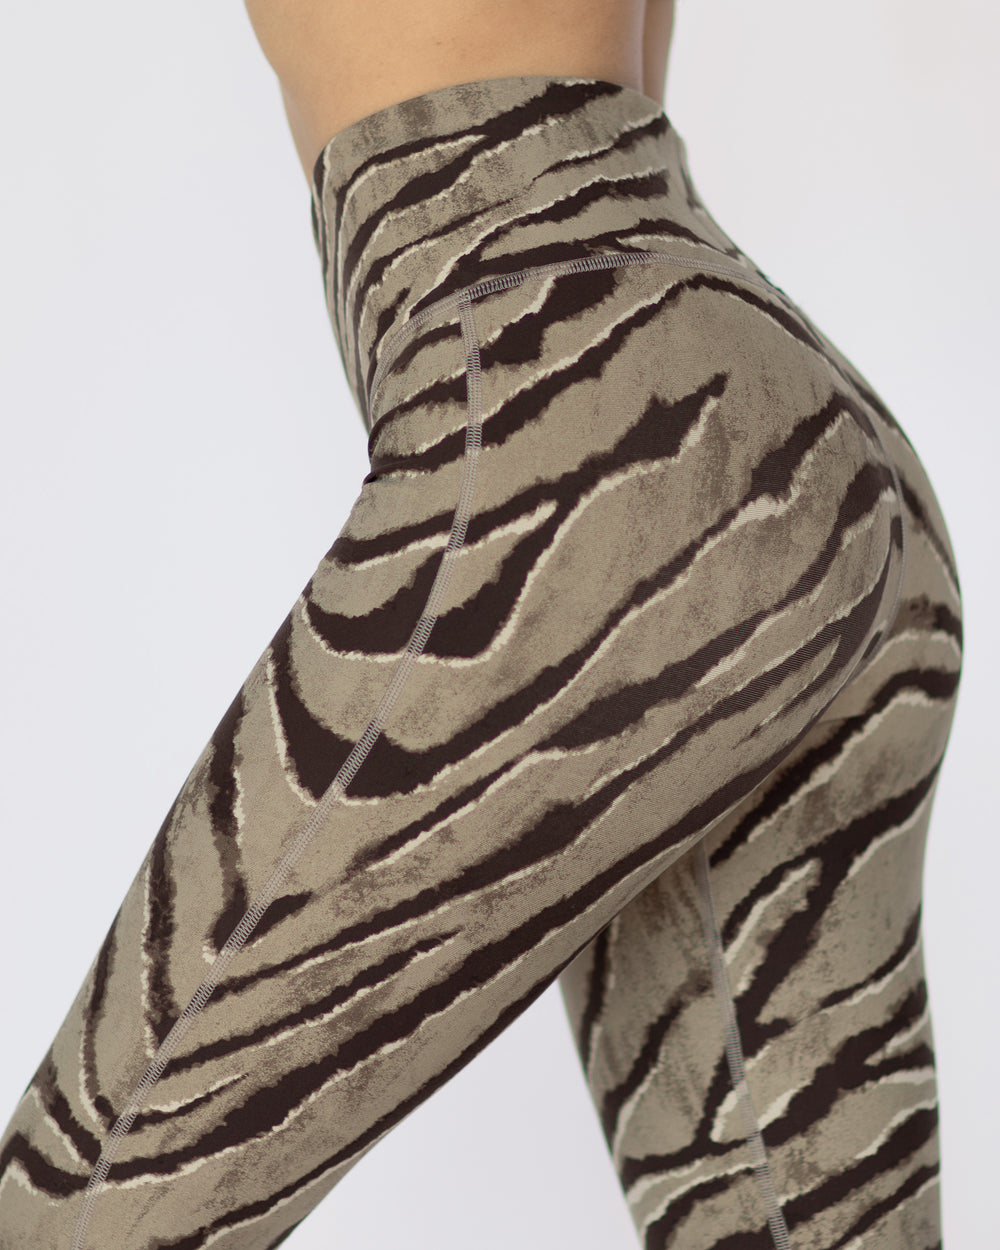 Instinct Tiger Print Legging - Desert Sand